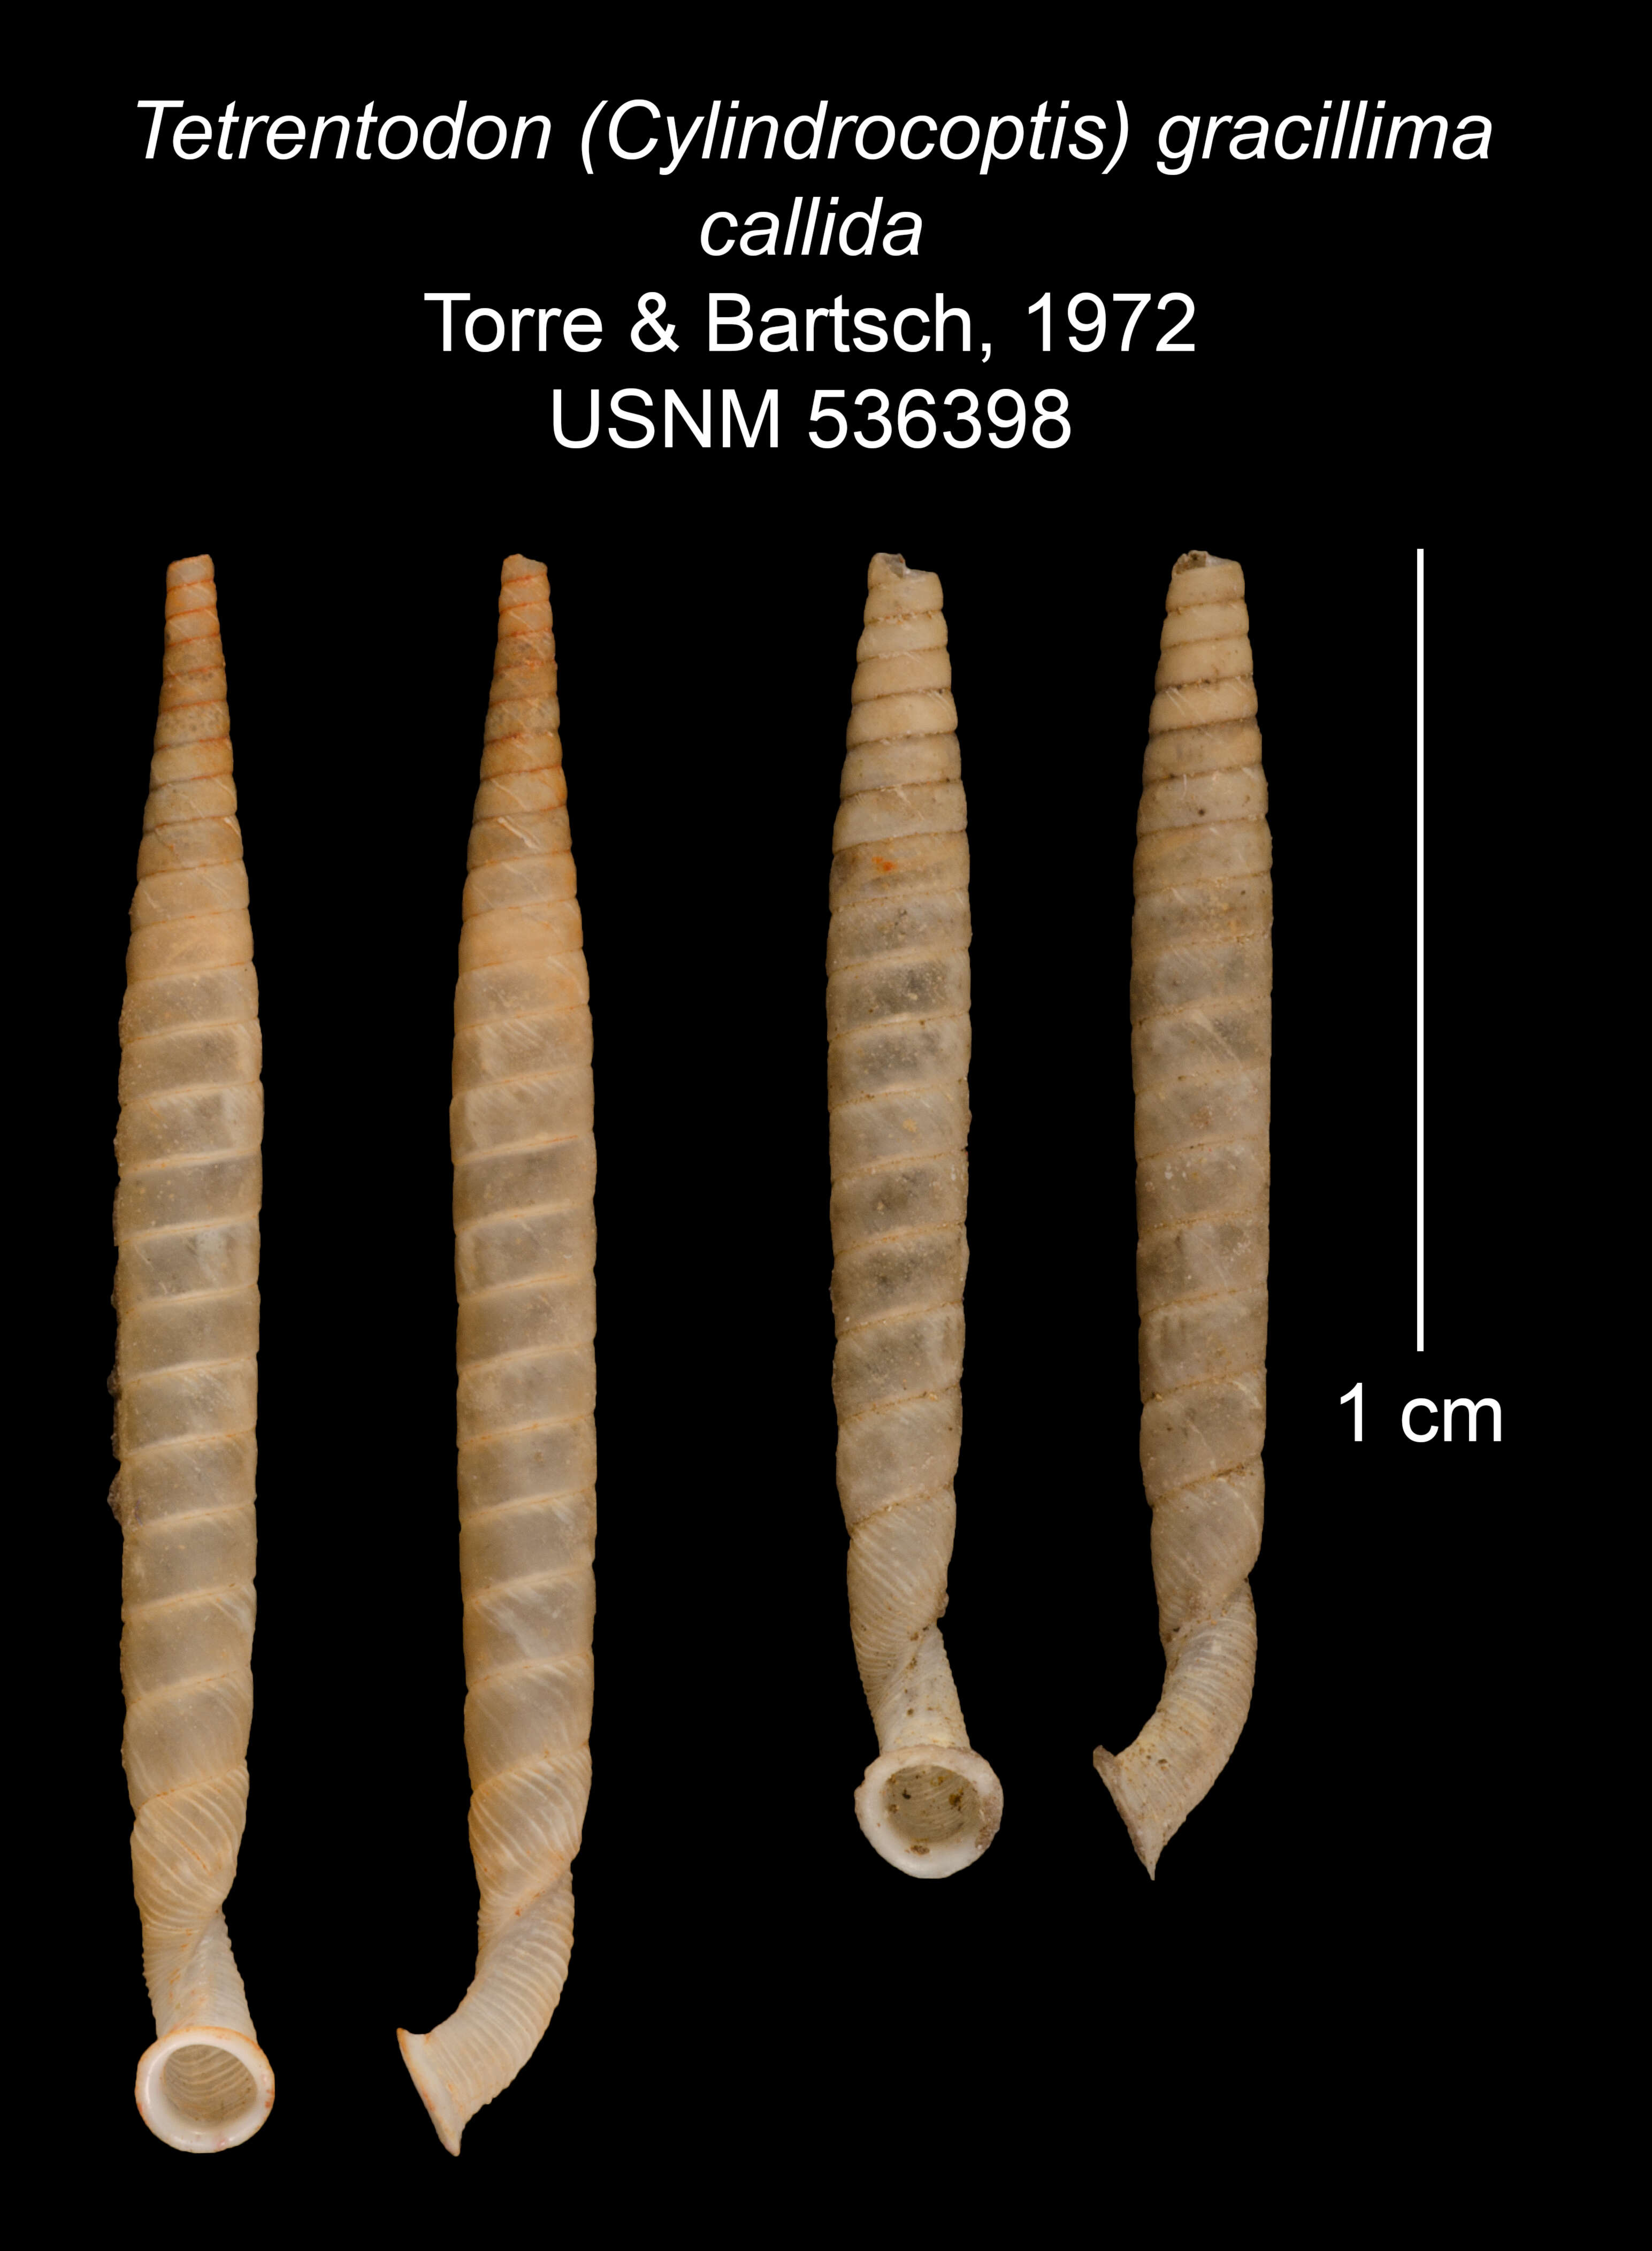 Image of Tetrentodon gracillimus callidus C. de la Torre & Bartsch 1972